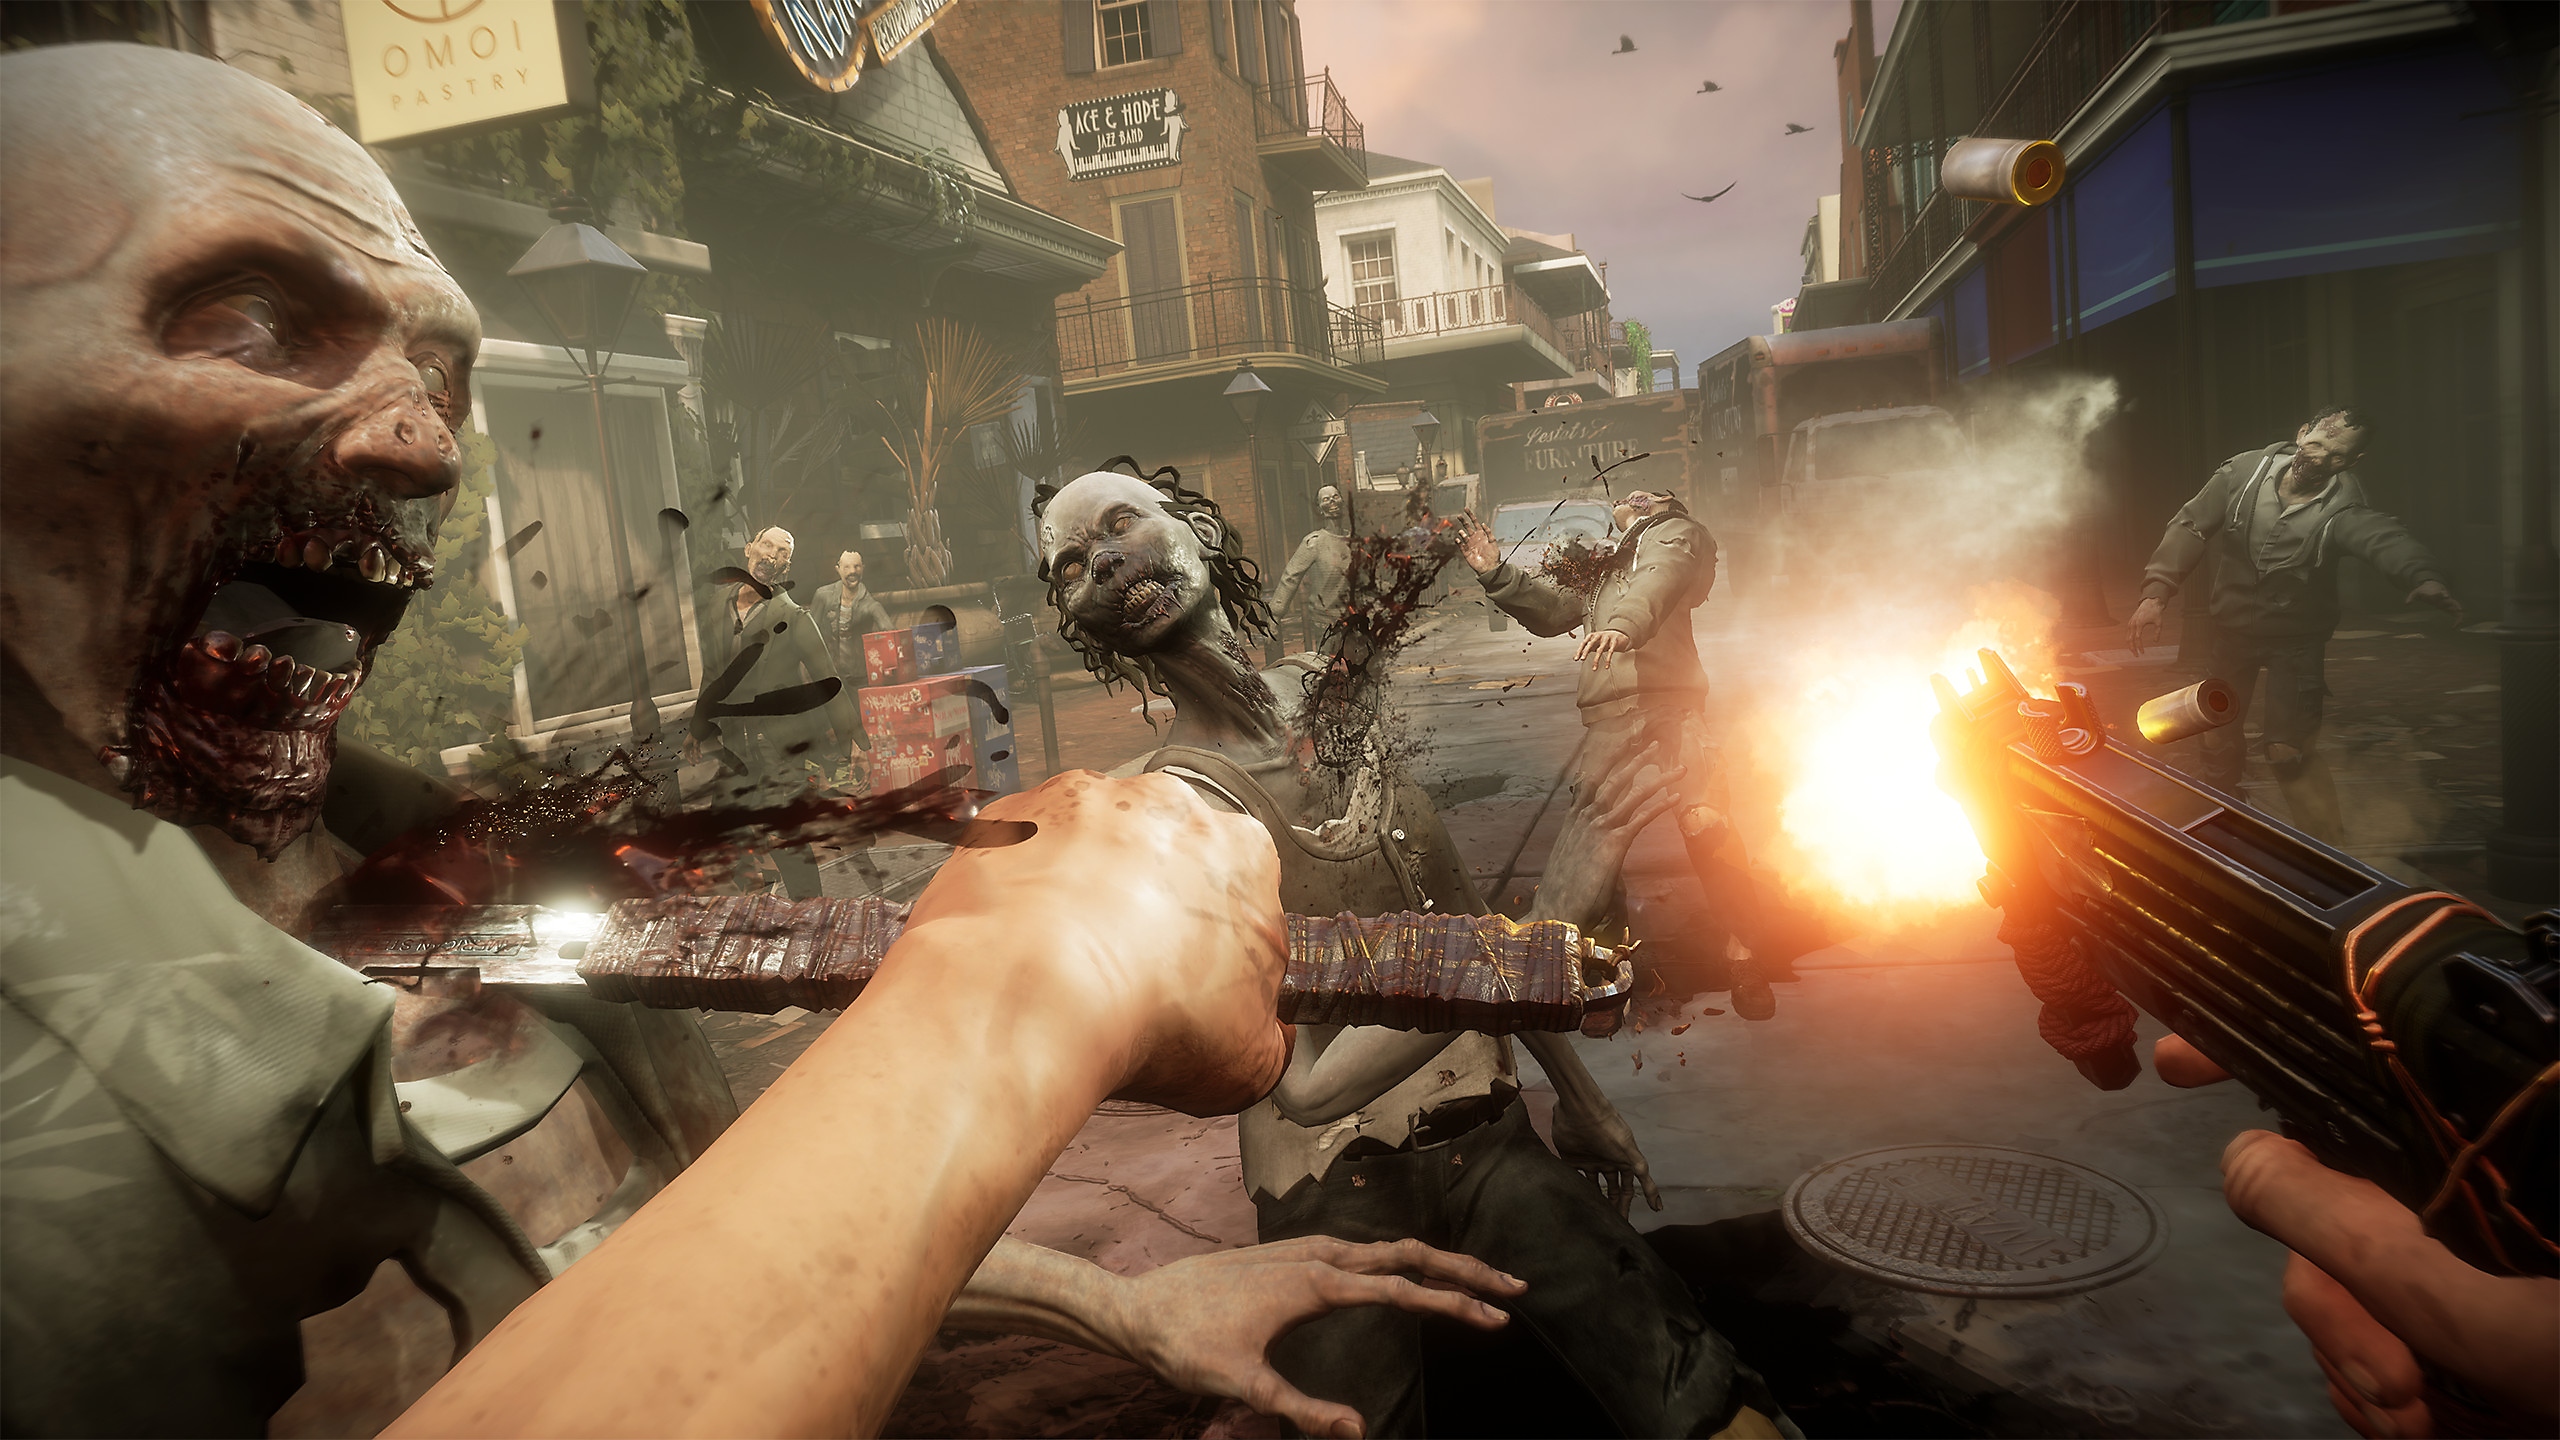 Captura de pantalla de TWDSS Capítulo 2 Retribución que muestra una vista en primera persona atacando a zombis empuñando un cuchillo y una pistola